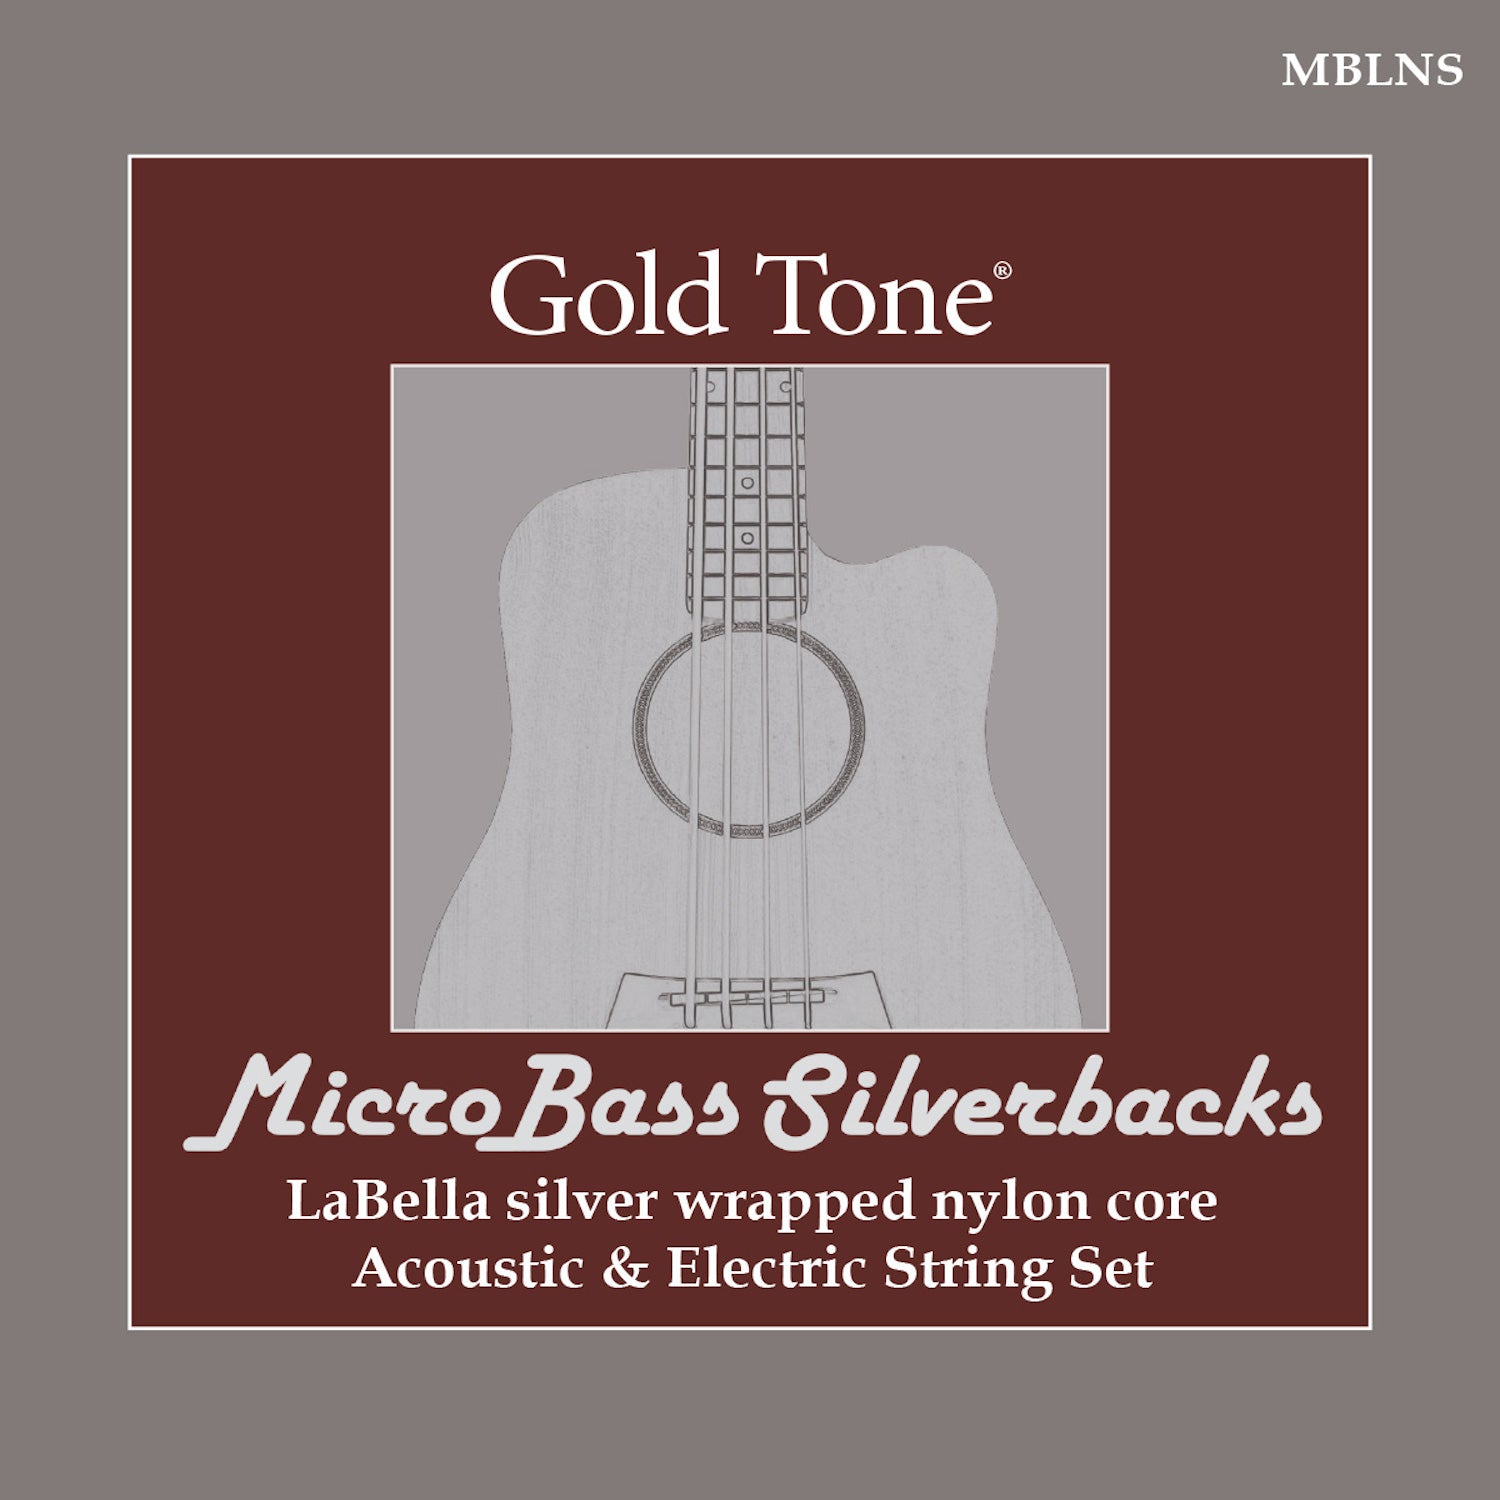 Gold Tone Strings MBLNS MicroBass La Bella Silverback Strings